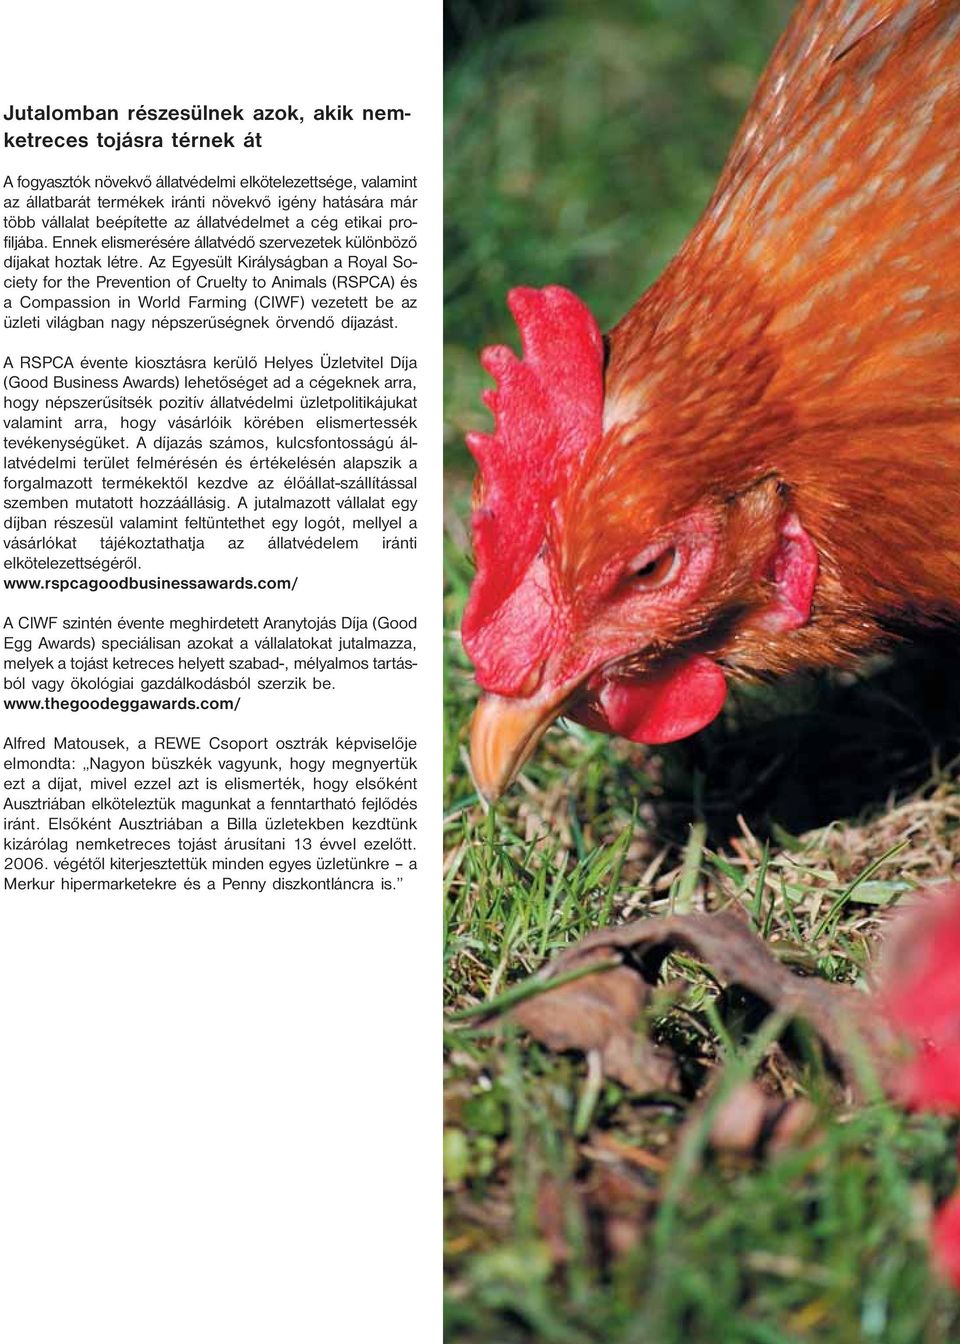 Az Egyesült Királyságban a Royal Society for the Prevention of Cruelty to Animals (RSPCA) és a Compassion in World Farming (CIWF) vezetett be az üzleti világban nagy népszerűségnek örvendő díjazást.